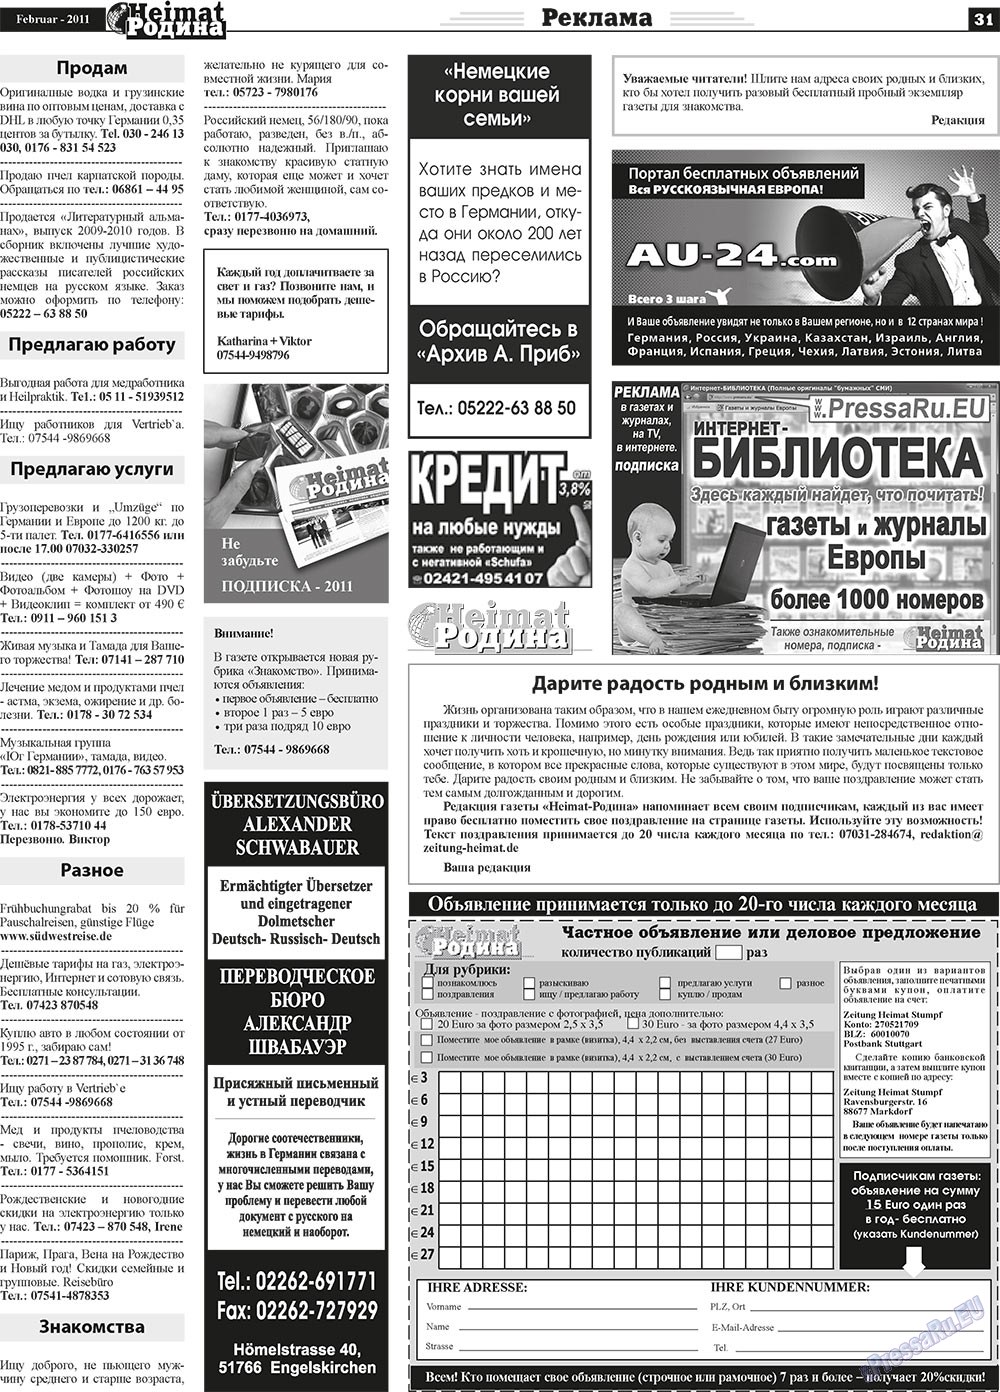 Heimat-Родина (газета). 2011 год, номер 2, стр. 31